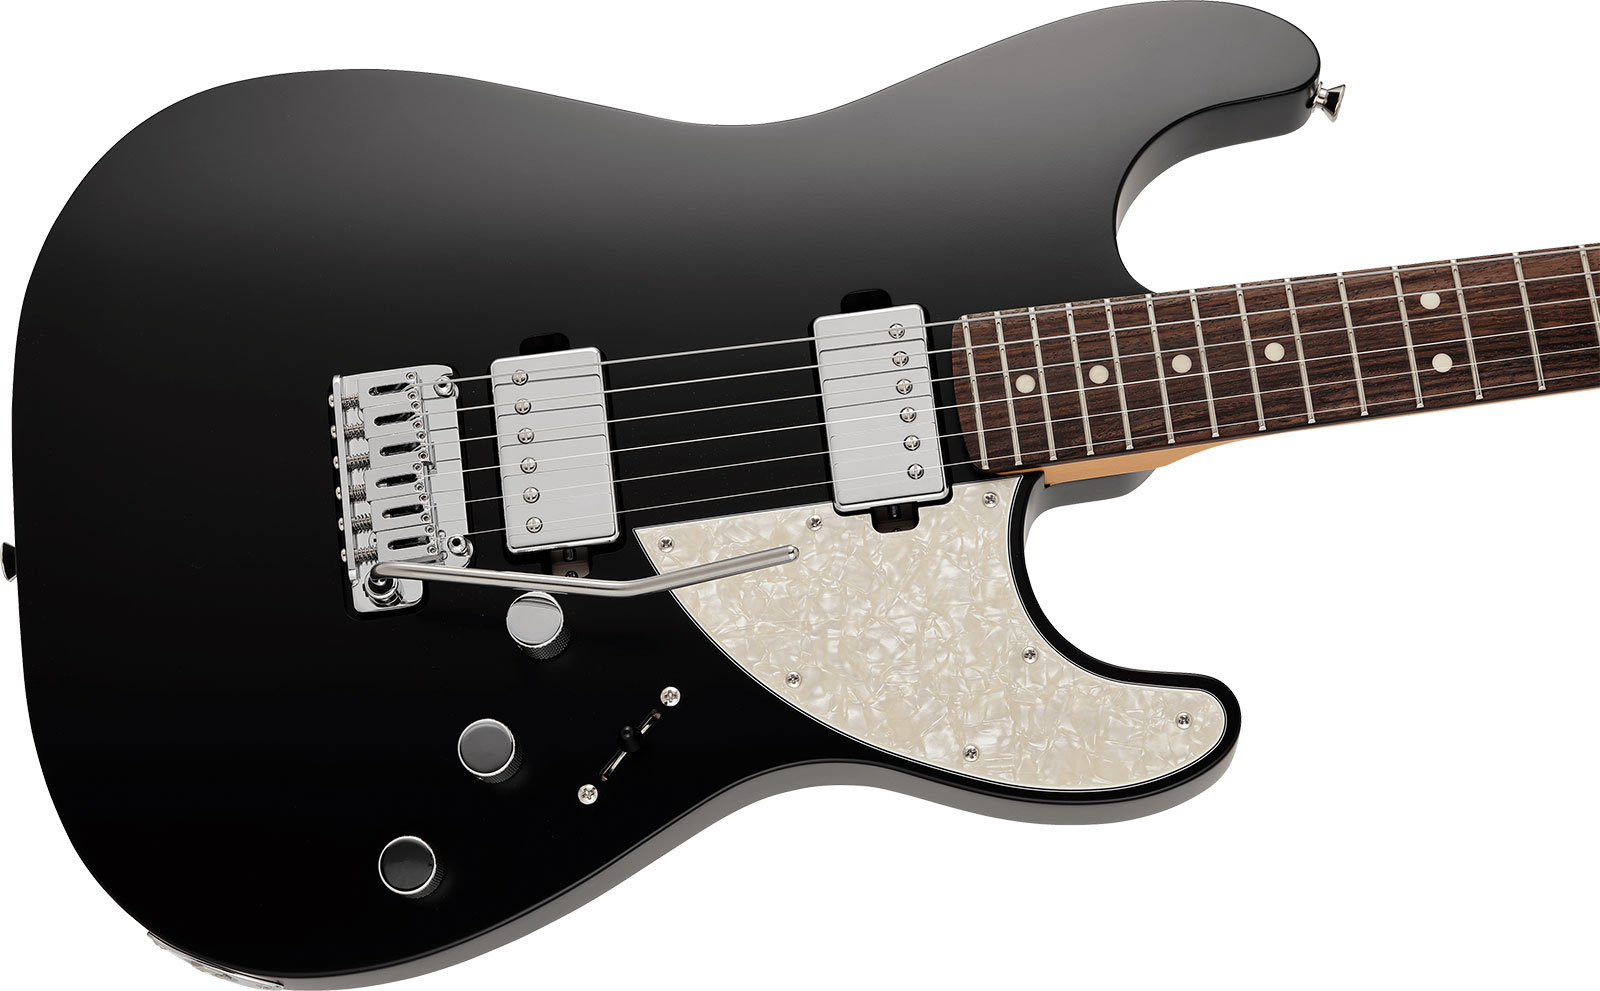 Fender Strat Elemental Mij Jap 2h Trem Rw - Stone Black - E-Gitarre in Str-Form - Variation 2